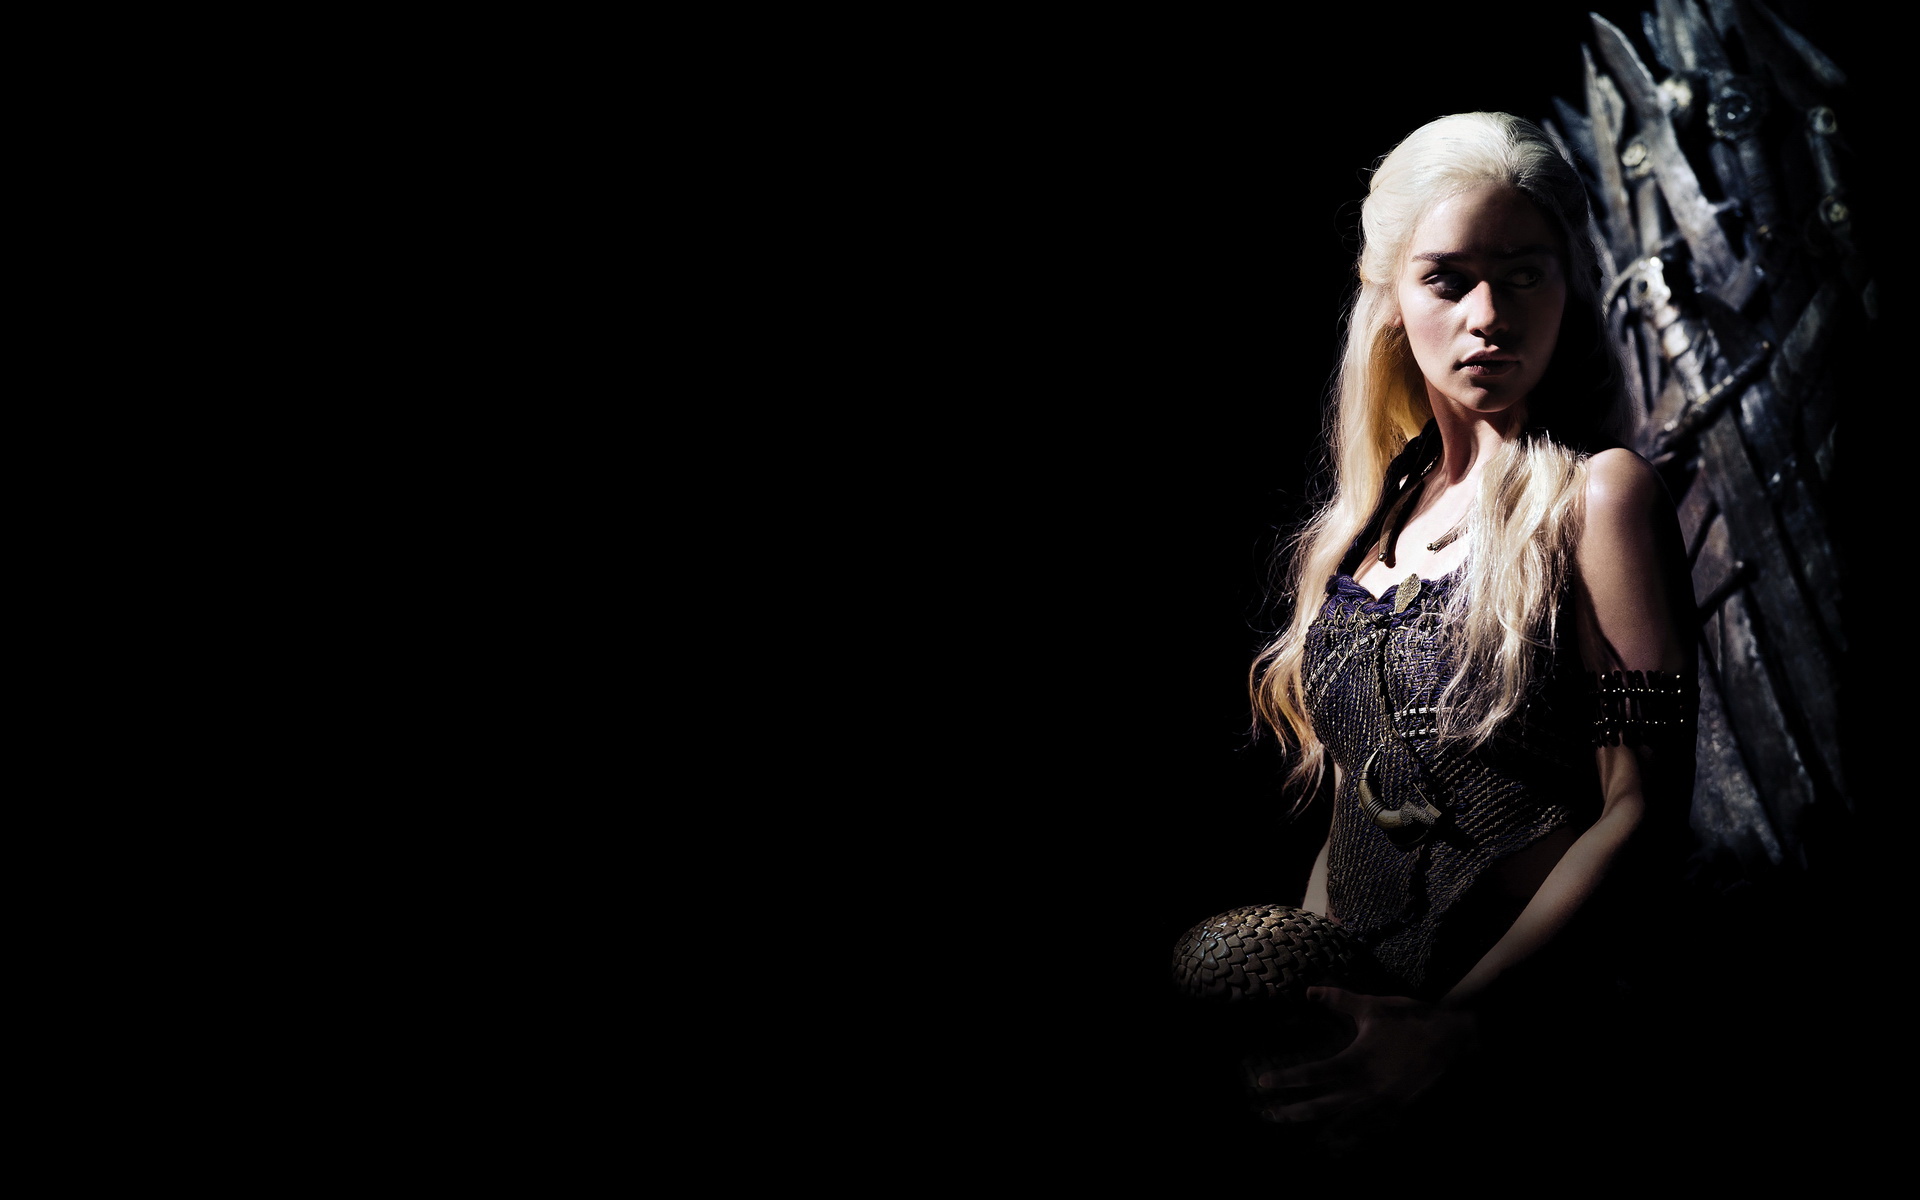 壁纸 : 权力的游戏, Daenerys Targaryen, 龙, 火, 电视, 系列 2000x1333 - nndd - 1145898 ...